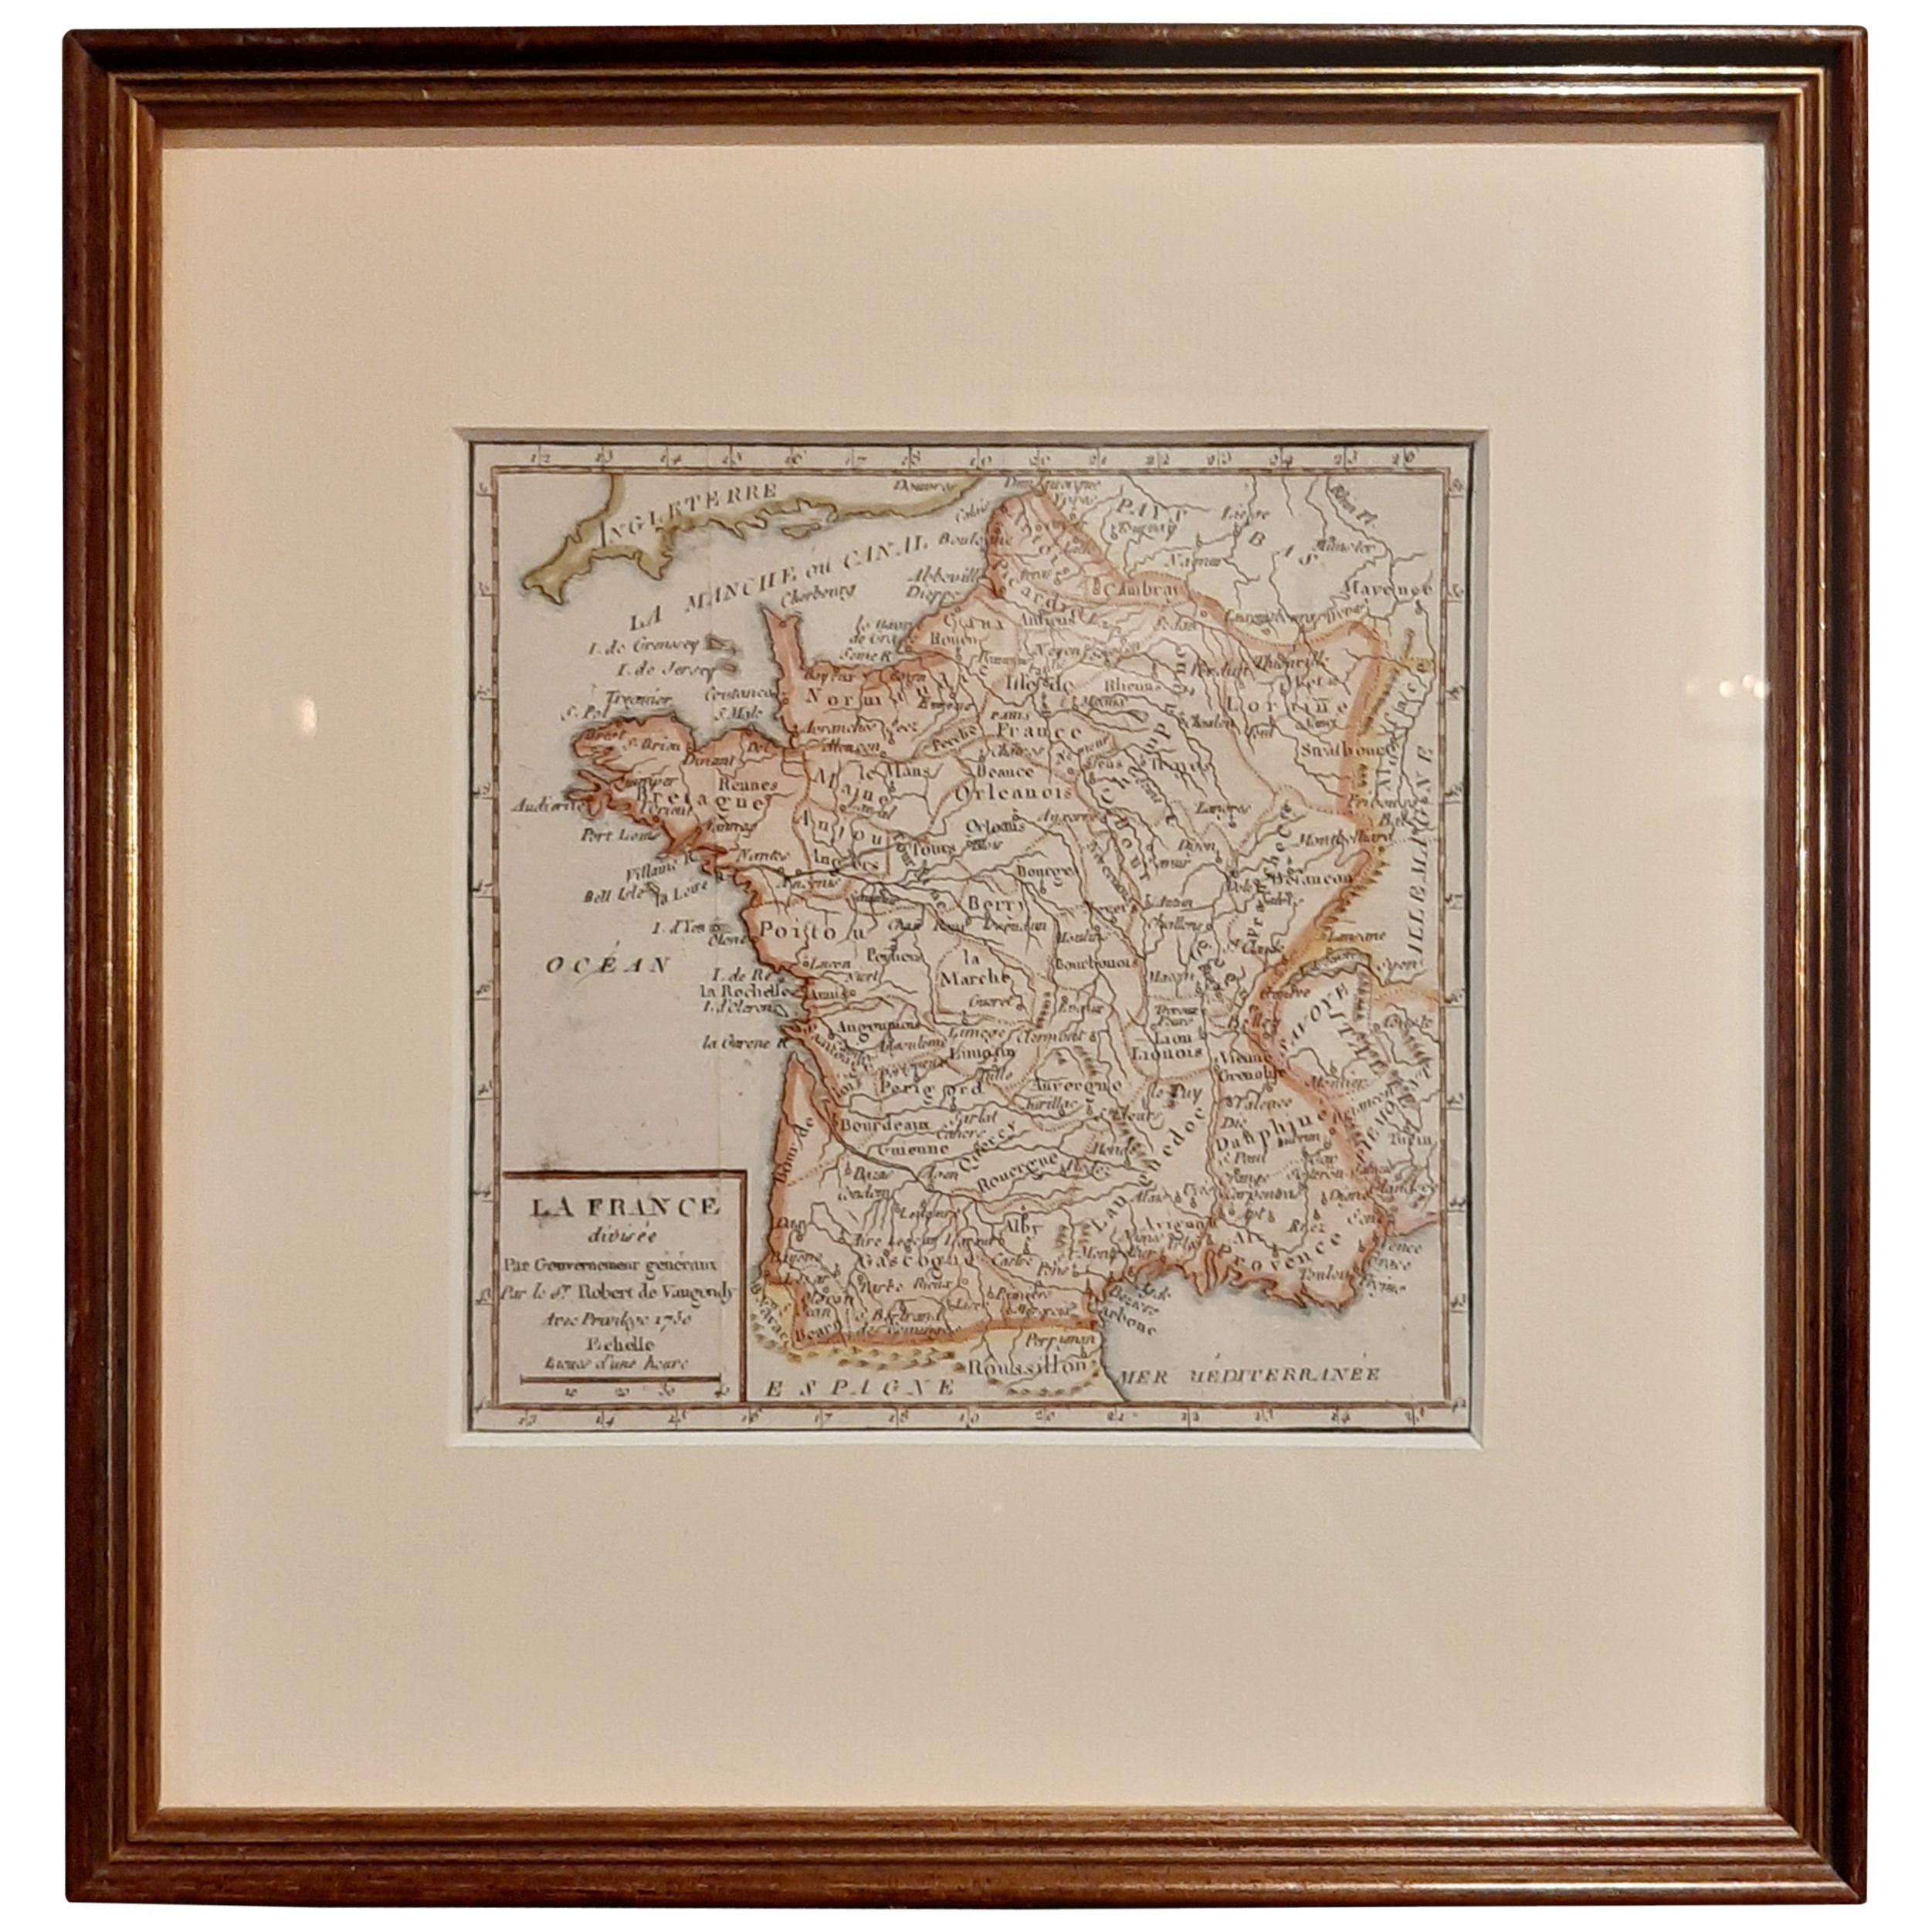 Carte ancienne de la France par Vaugondy, datant d'environ 1750